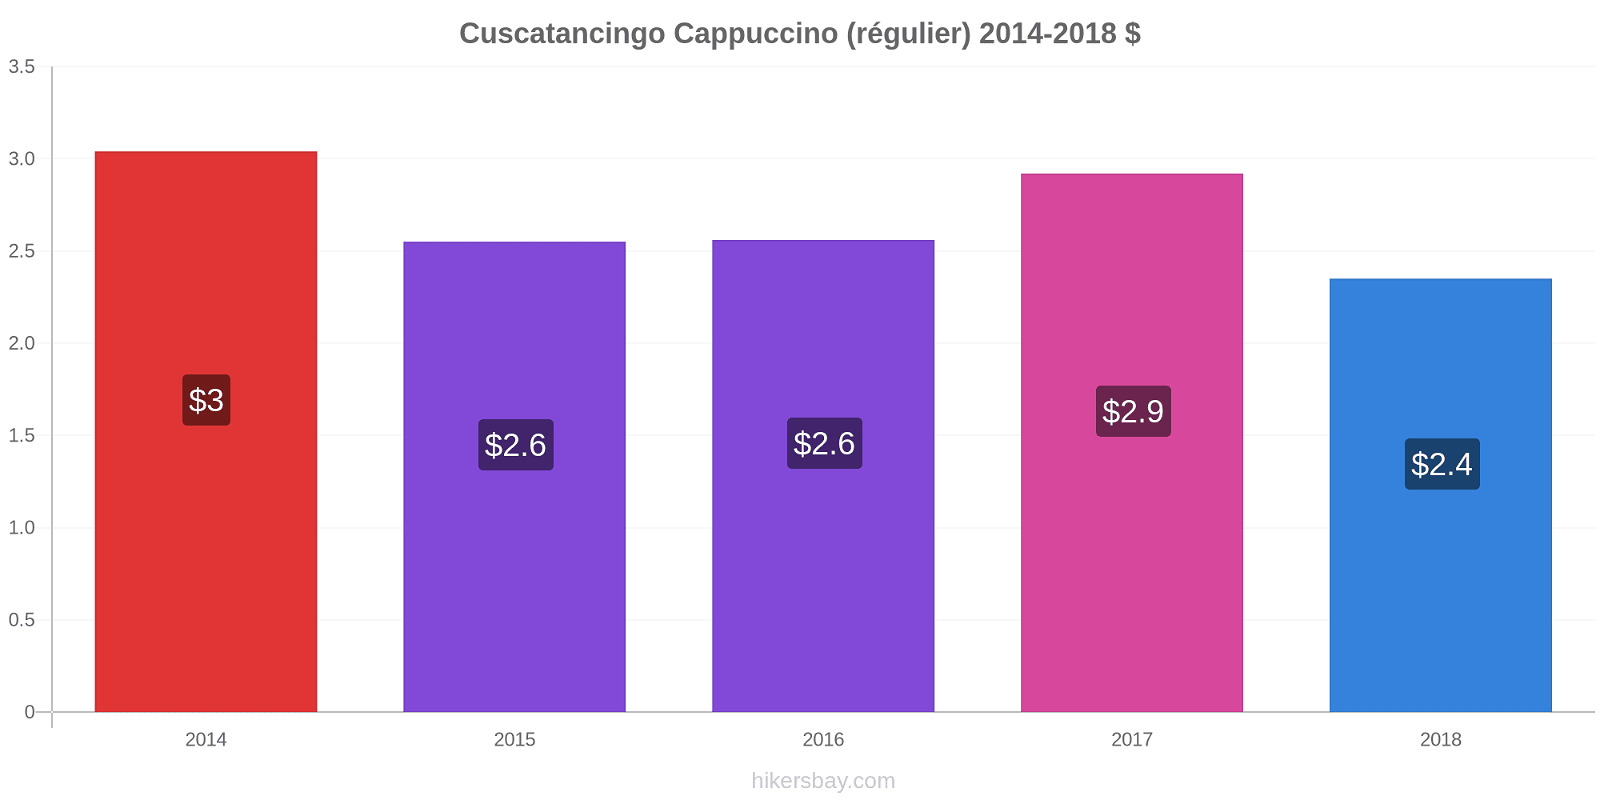 Cuscatancingo changements de prix Cappuccino (régulier) hikersbay.com